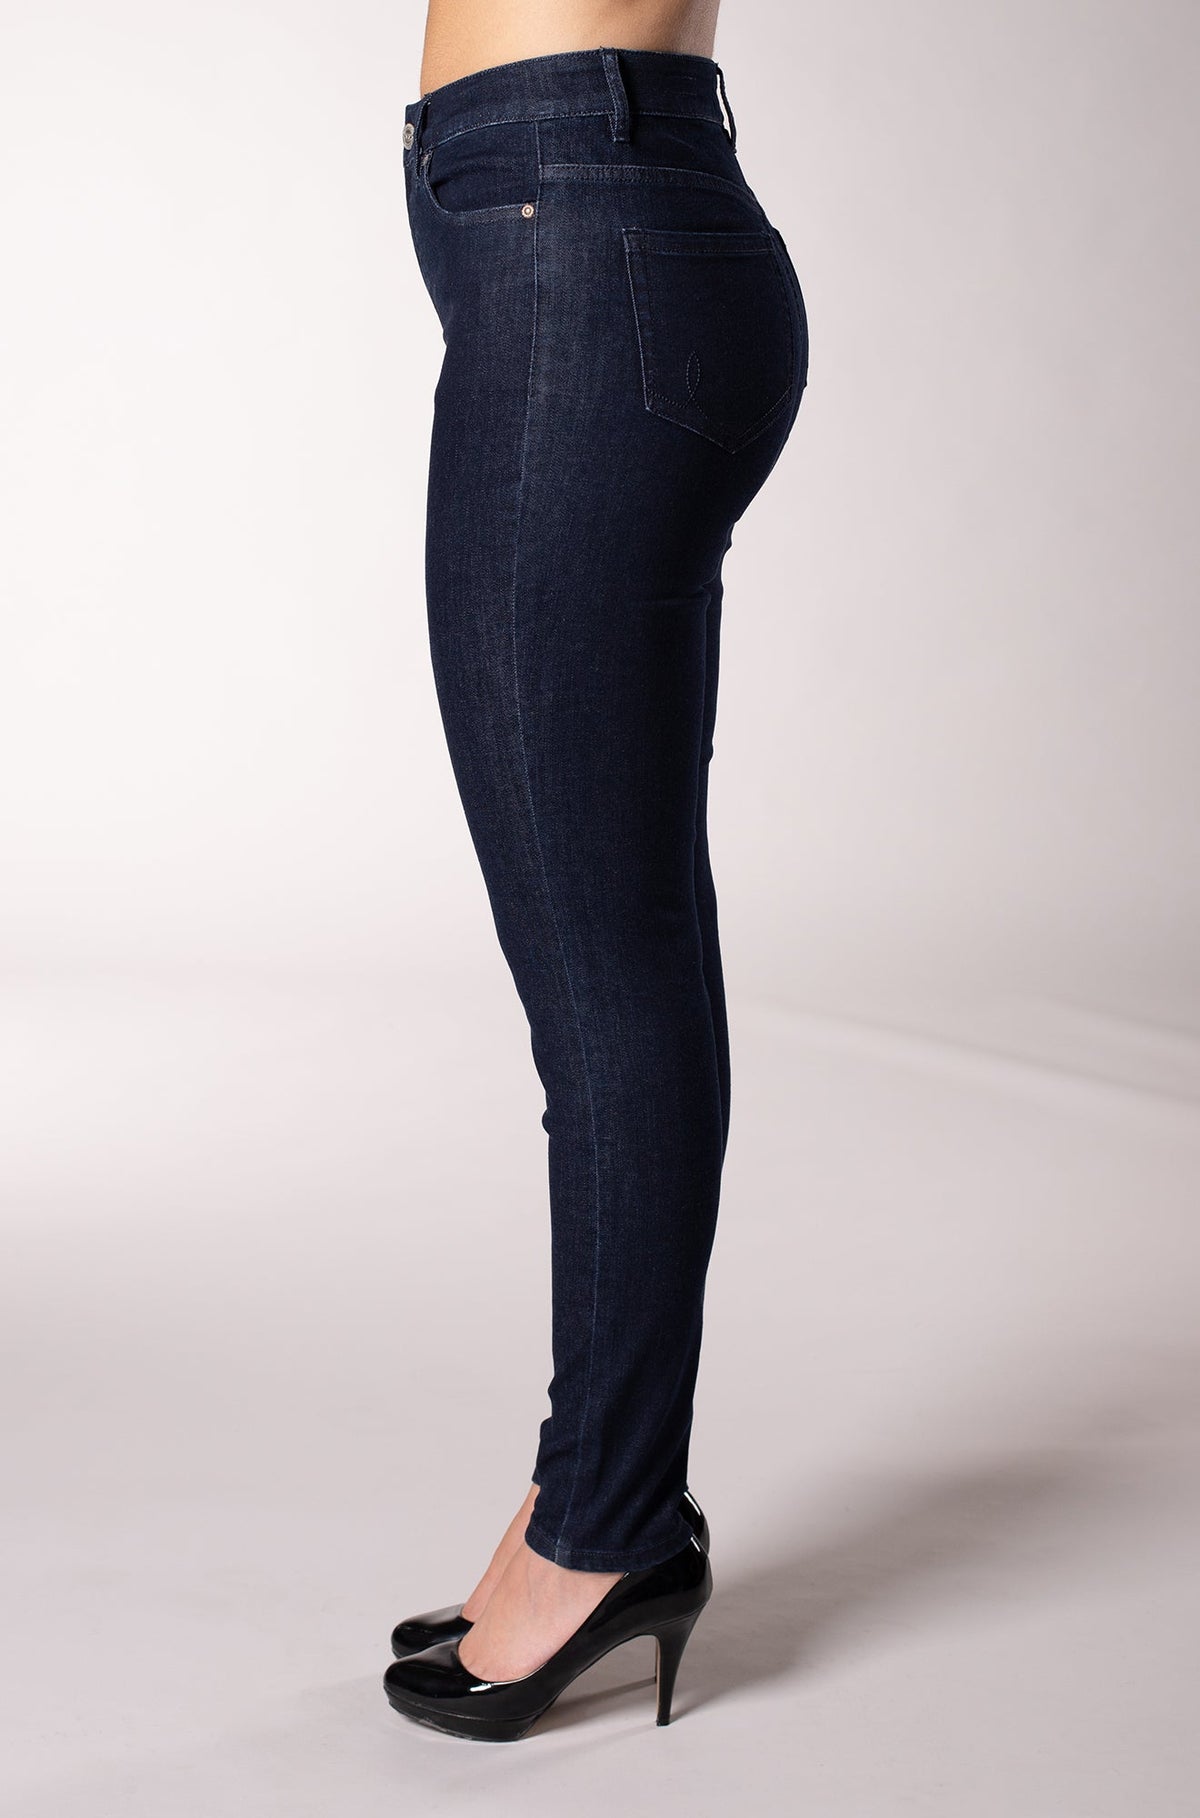 Jeans Skinny pour femme par Carreli Jeans | BP-126 R | Boutique Vvög, vêtements mode pour homme et femme